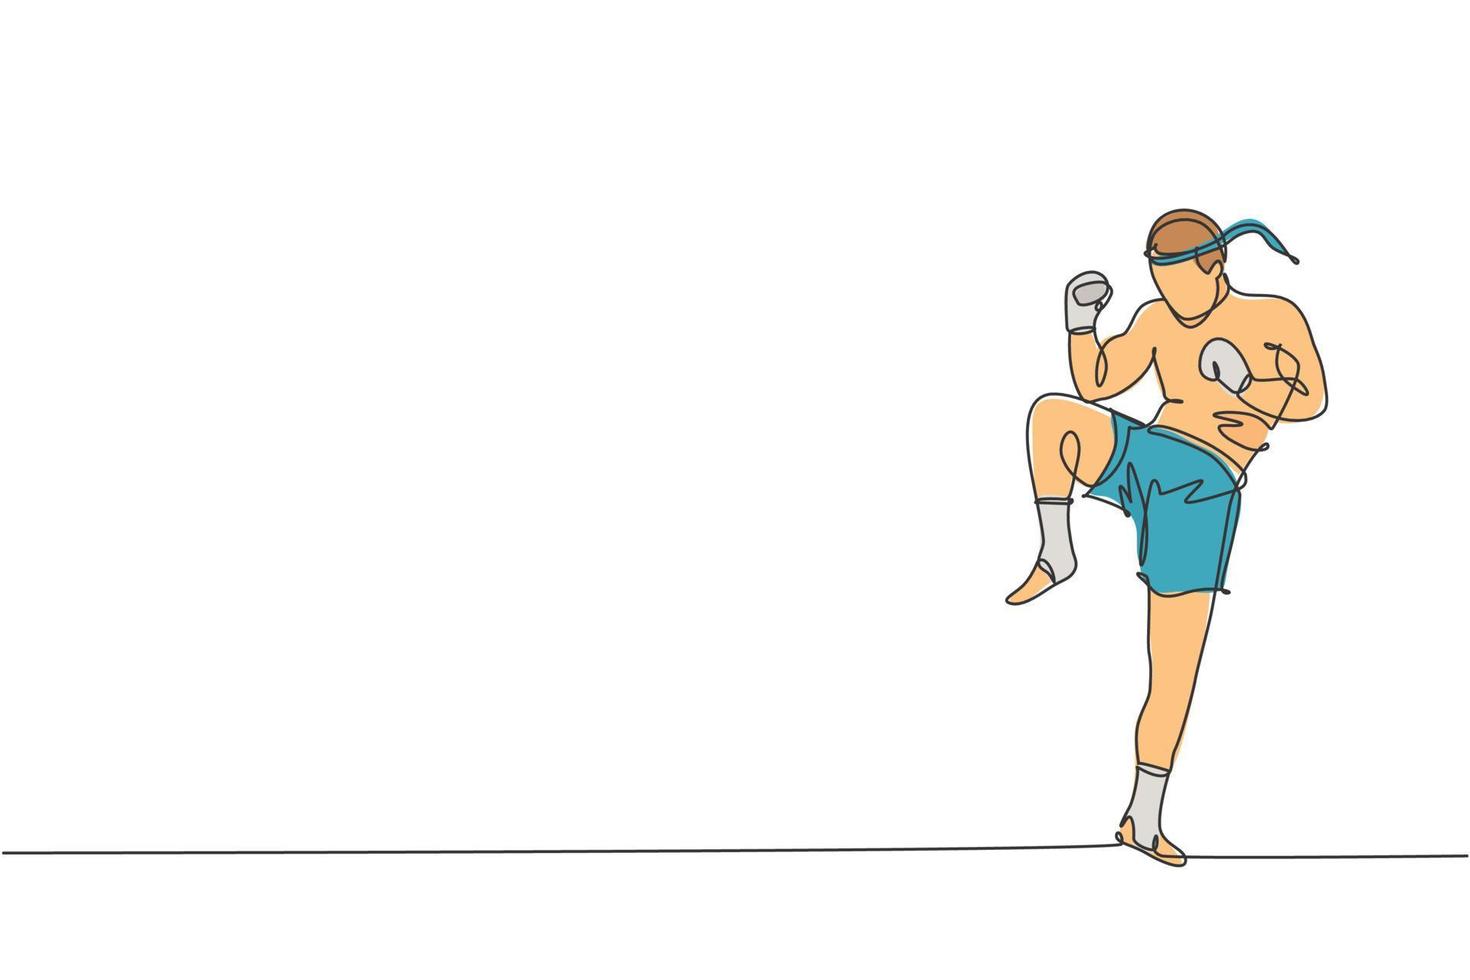 um único desenho de linha do jovem lutador de muay thai enérgico exercitando-se no gráfico de ilustração vetorial de academia de ginástica. conceito de esporte de boxe tailandês combativo. design moderno de desenho de linha contínua vetor